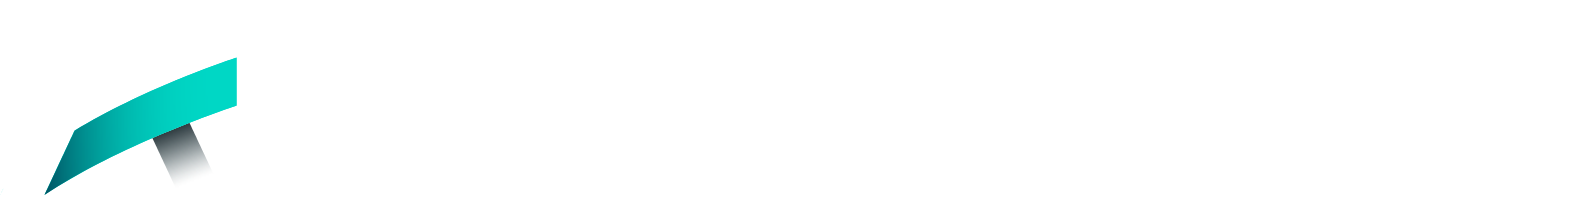 Akerna logo large for dark backgrounds (transparent PNG)